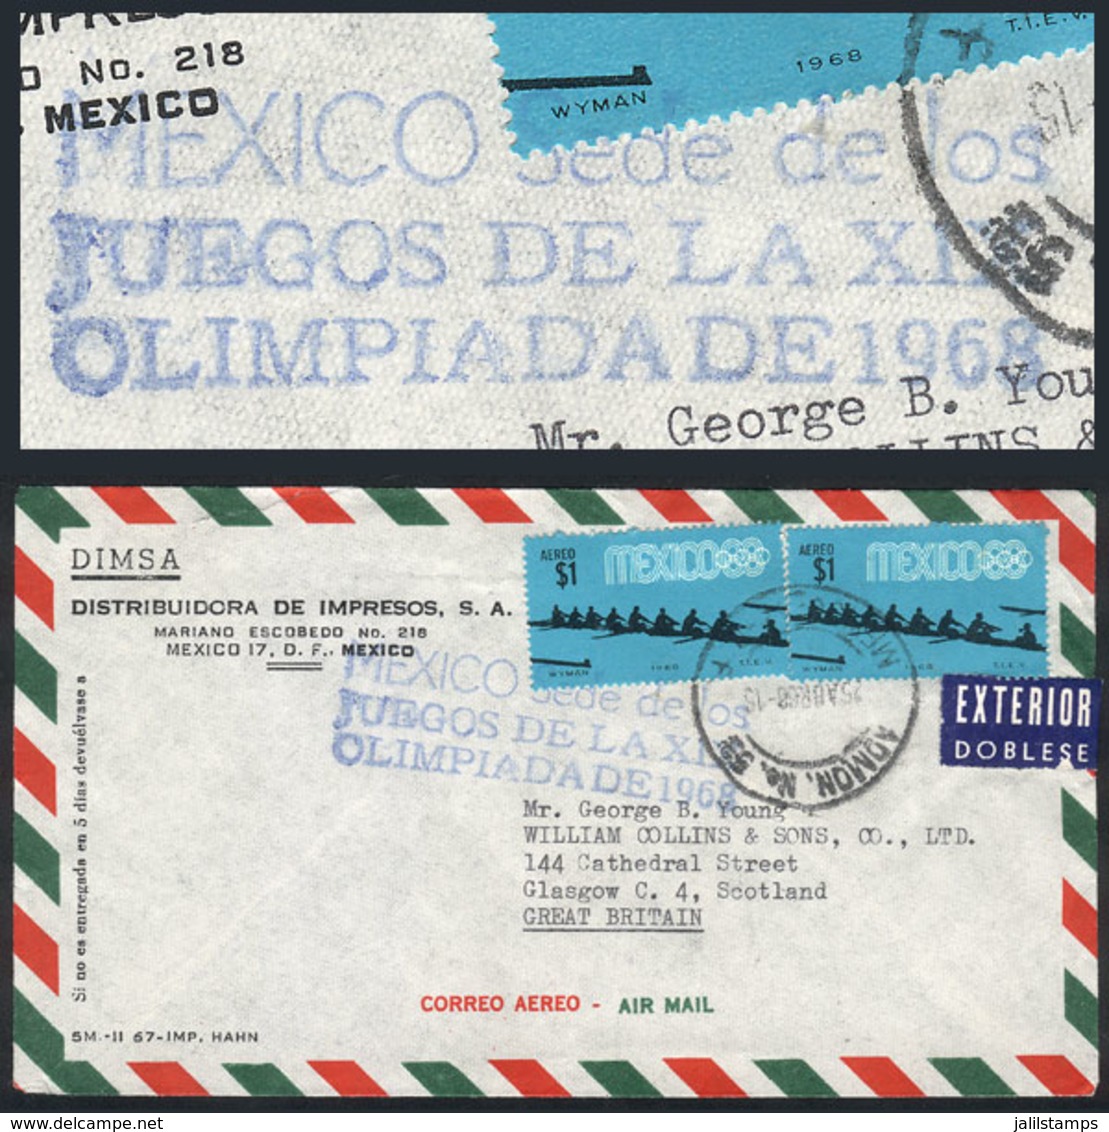 MEXICO: 25/AP/1968 Mexico DF - Great Britain, Airmail Cover With Blue Handstamp "MEXICO SEDE DE LOS JUEGOS DE LA XIX OLI - Mexico